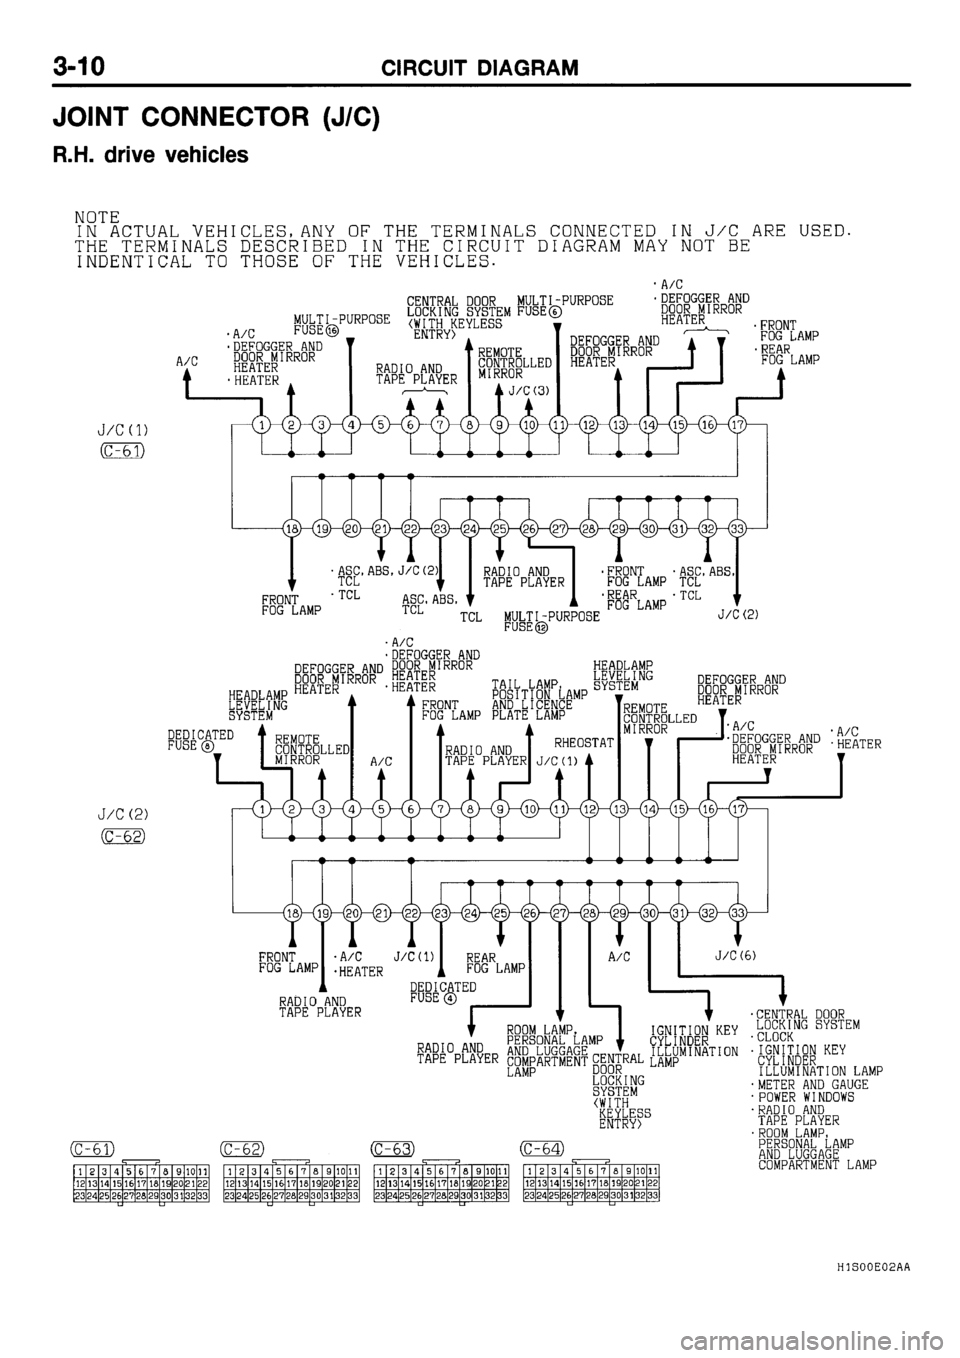 MITSUBISHI GALANT 2001 8.G Electrical Wiring Diagram Manual PDF 